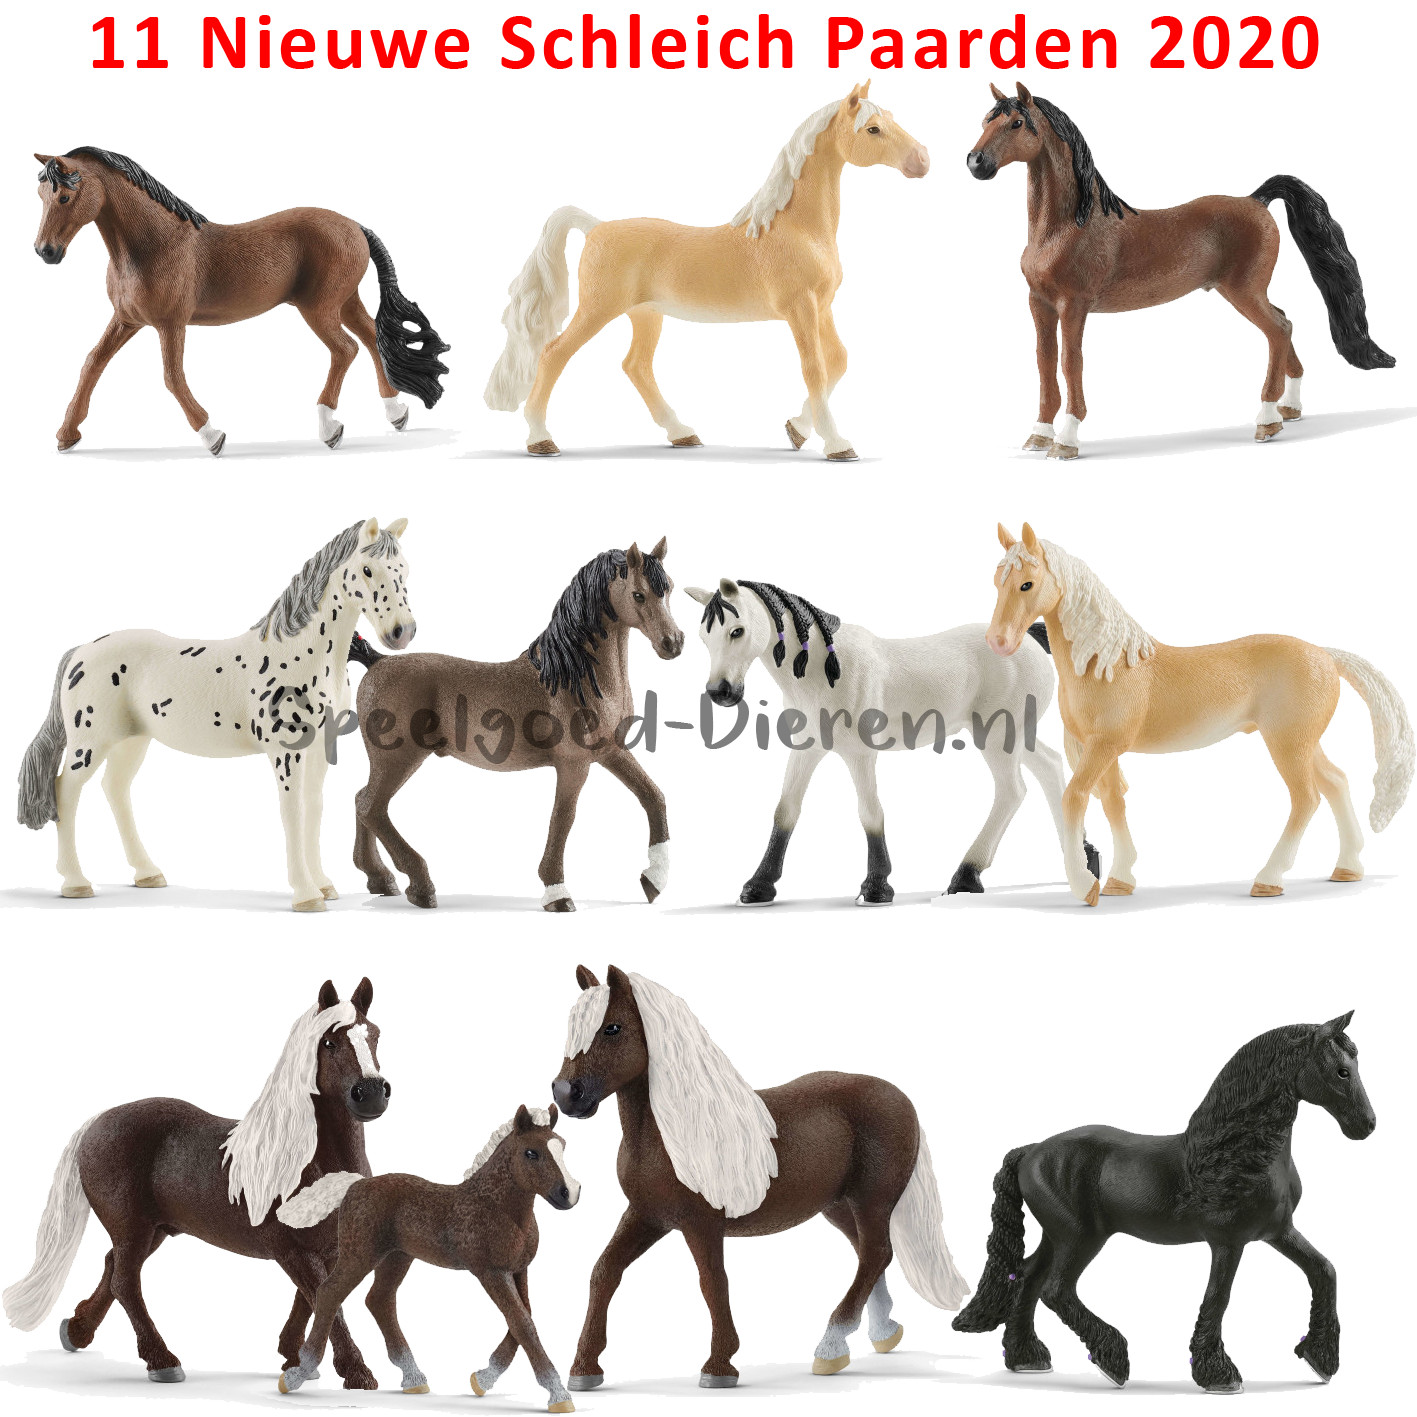 schleich 2019 horses